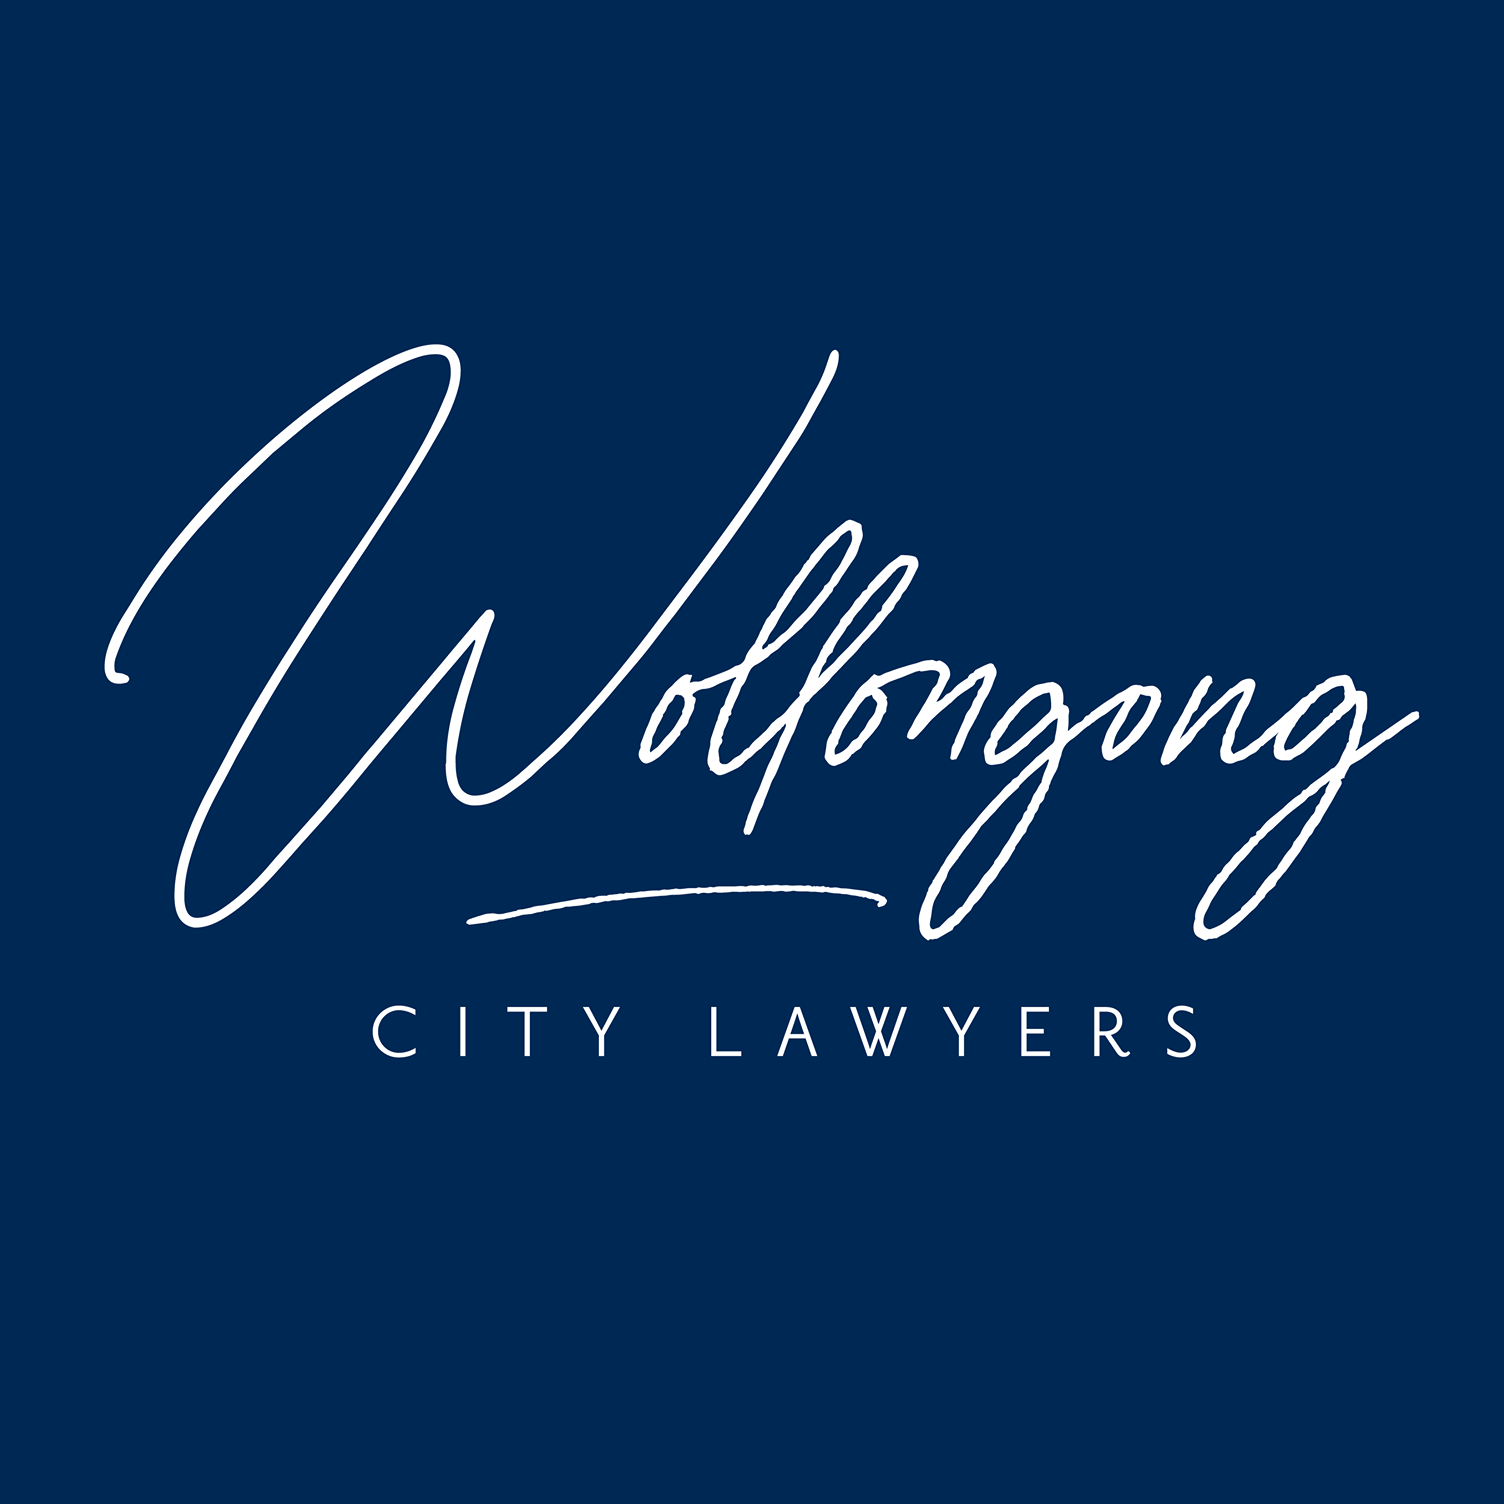 Company logo of Wollongong City Lawyers